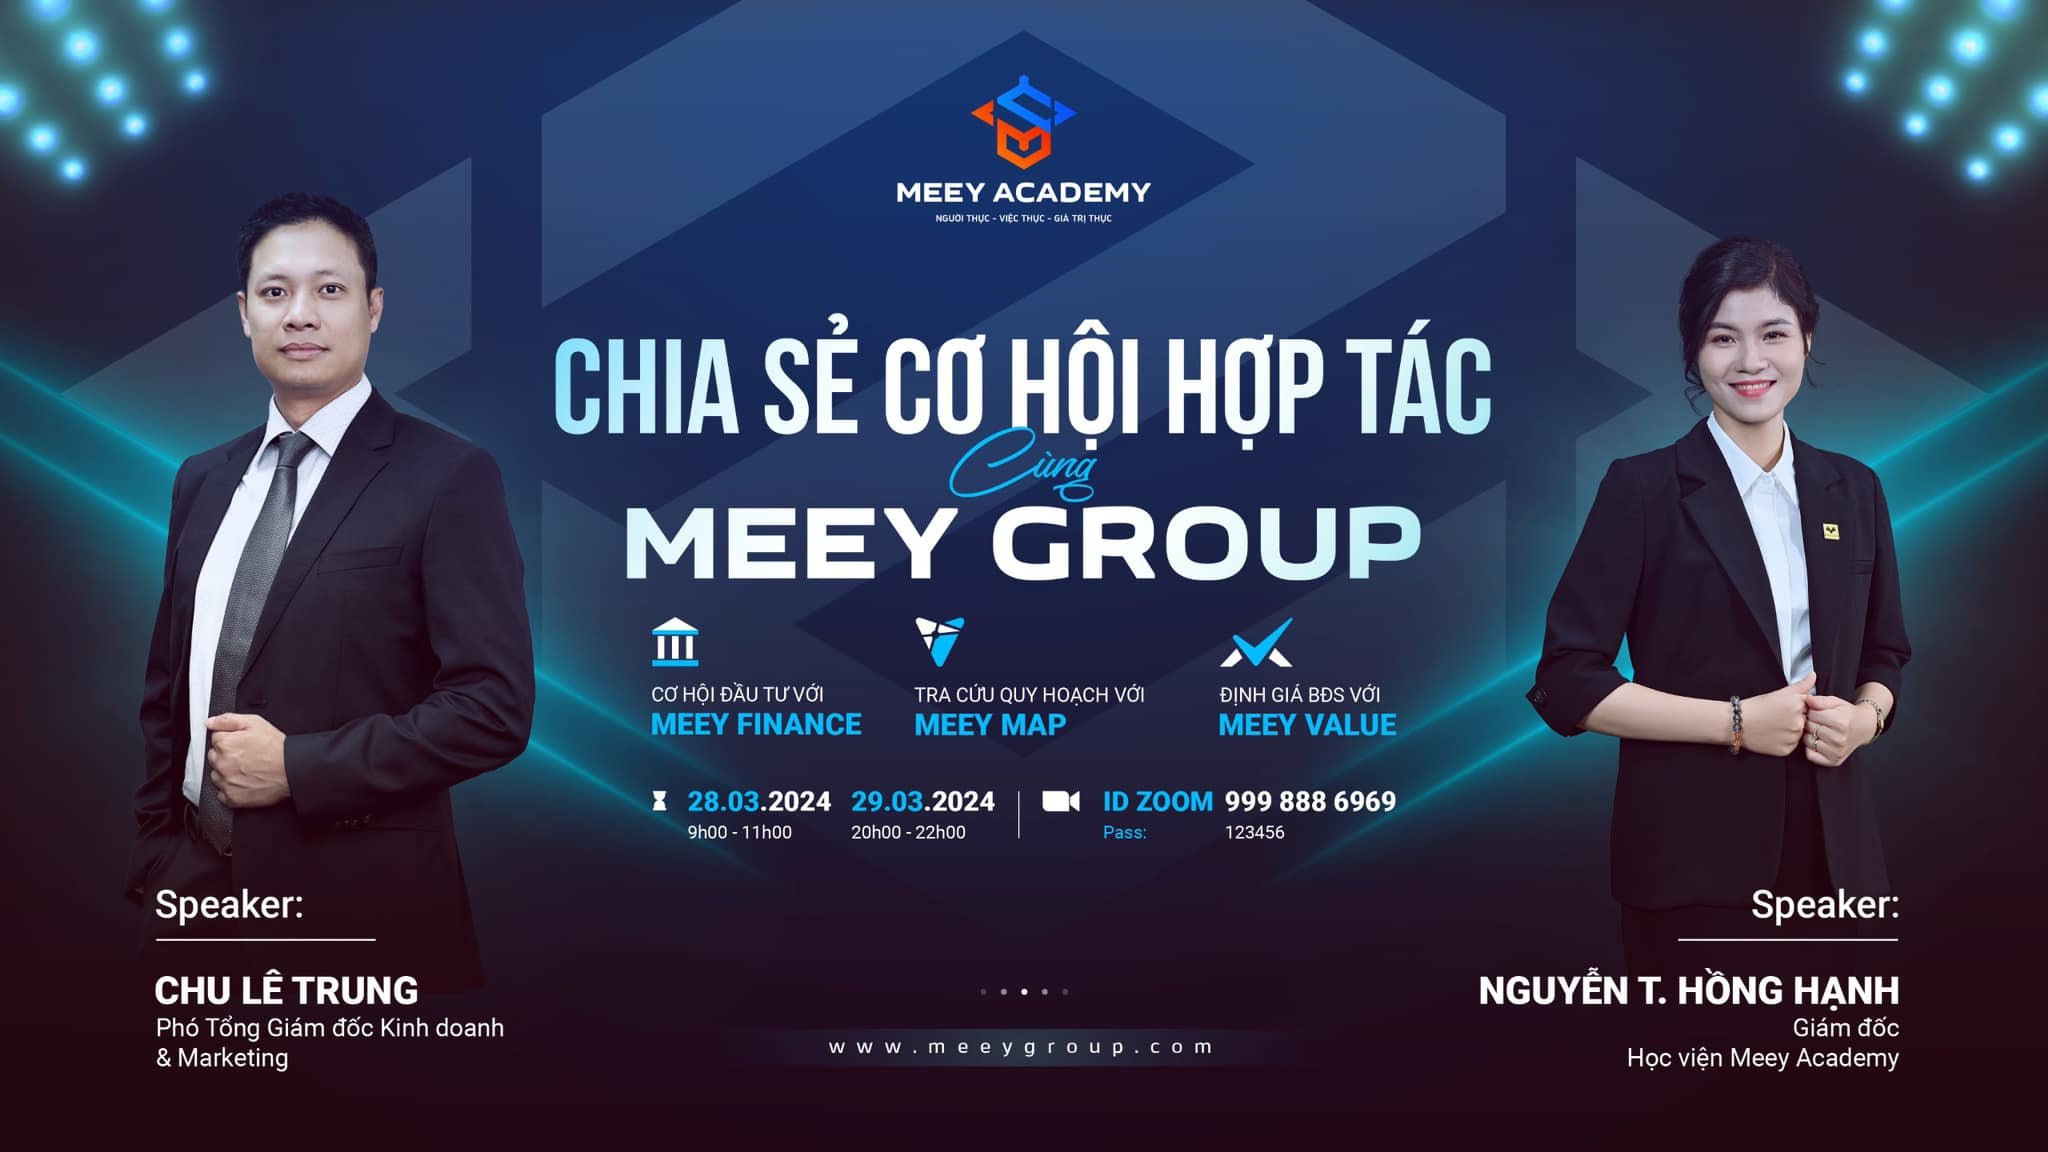 
Hai diễn giả sẽ trực tiếp “Chia sẻ cơ hội hợp tác kinh doanh cùng Meey Group” diễn ra vào ngày 28 và 29/3
